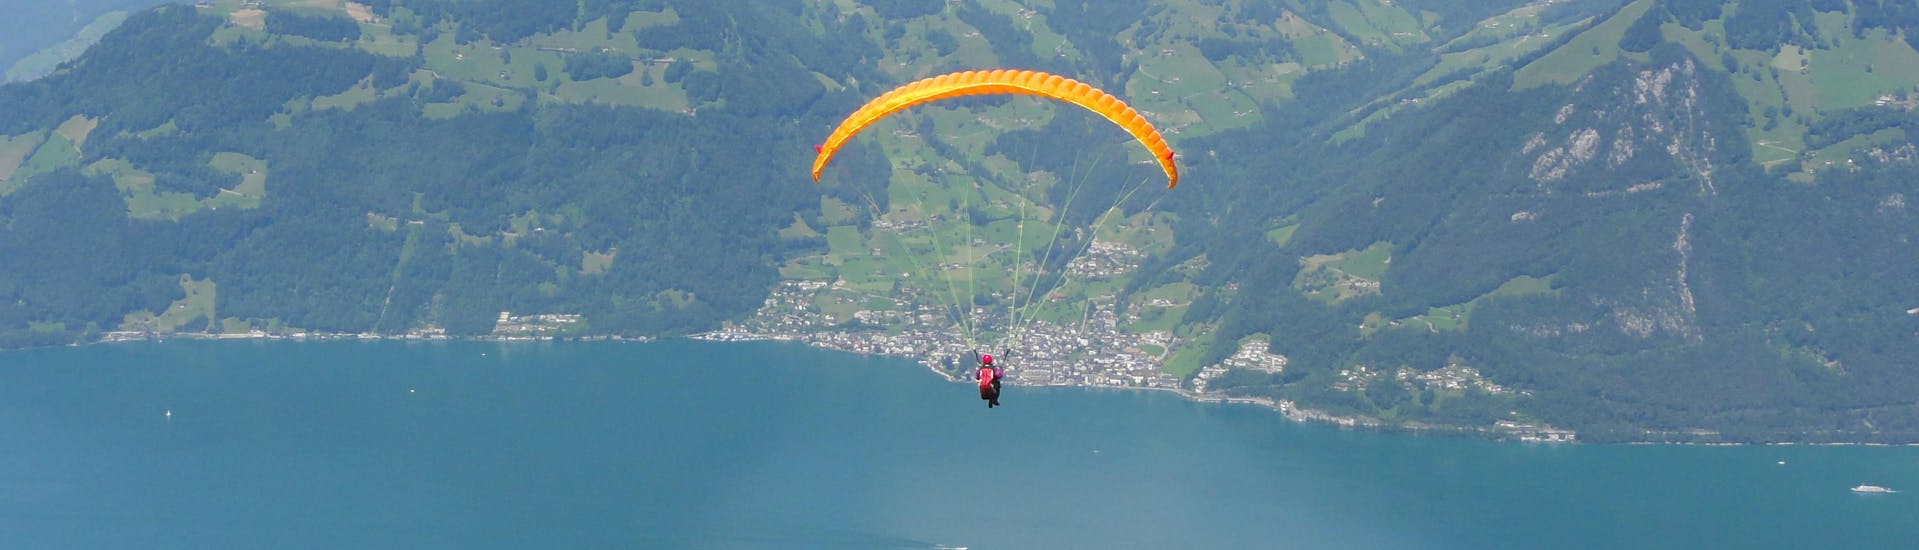 Un uomo sta facendo un volo in parapendio biposto nell'hotspot di parapendio presso Lucerne.